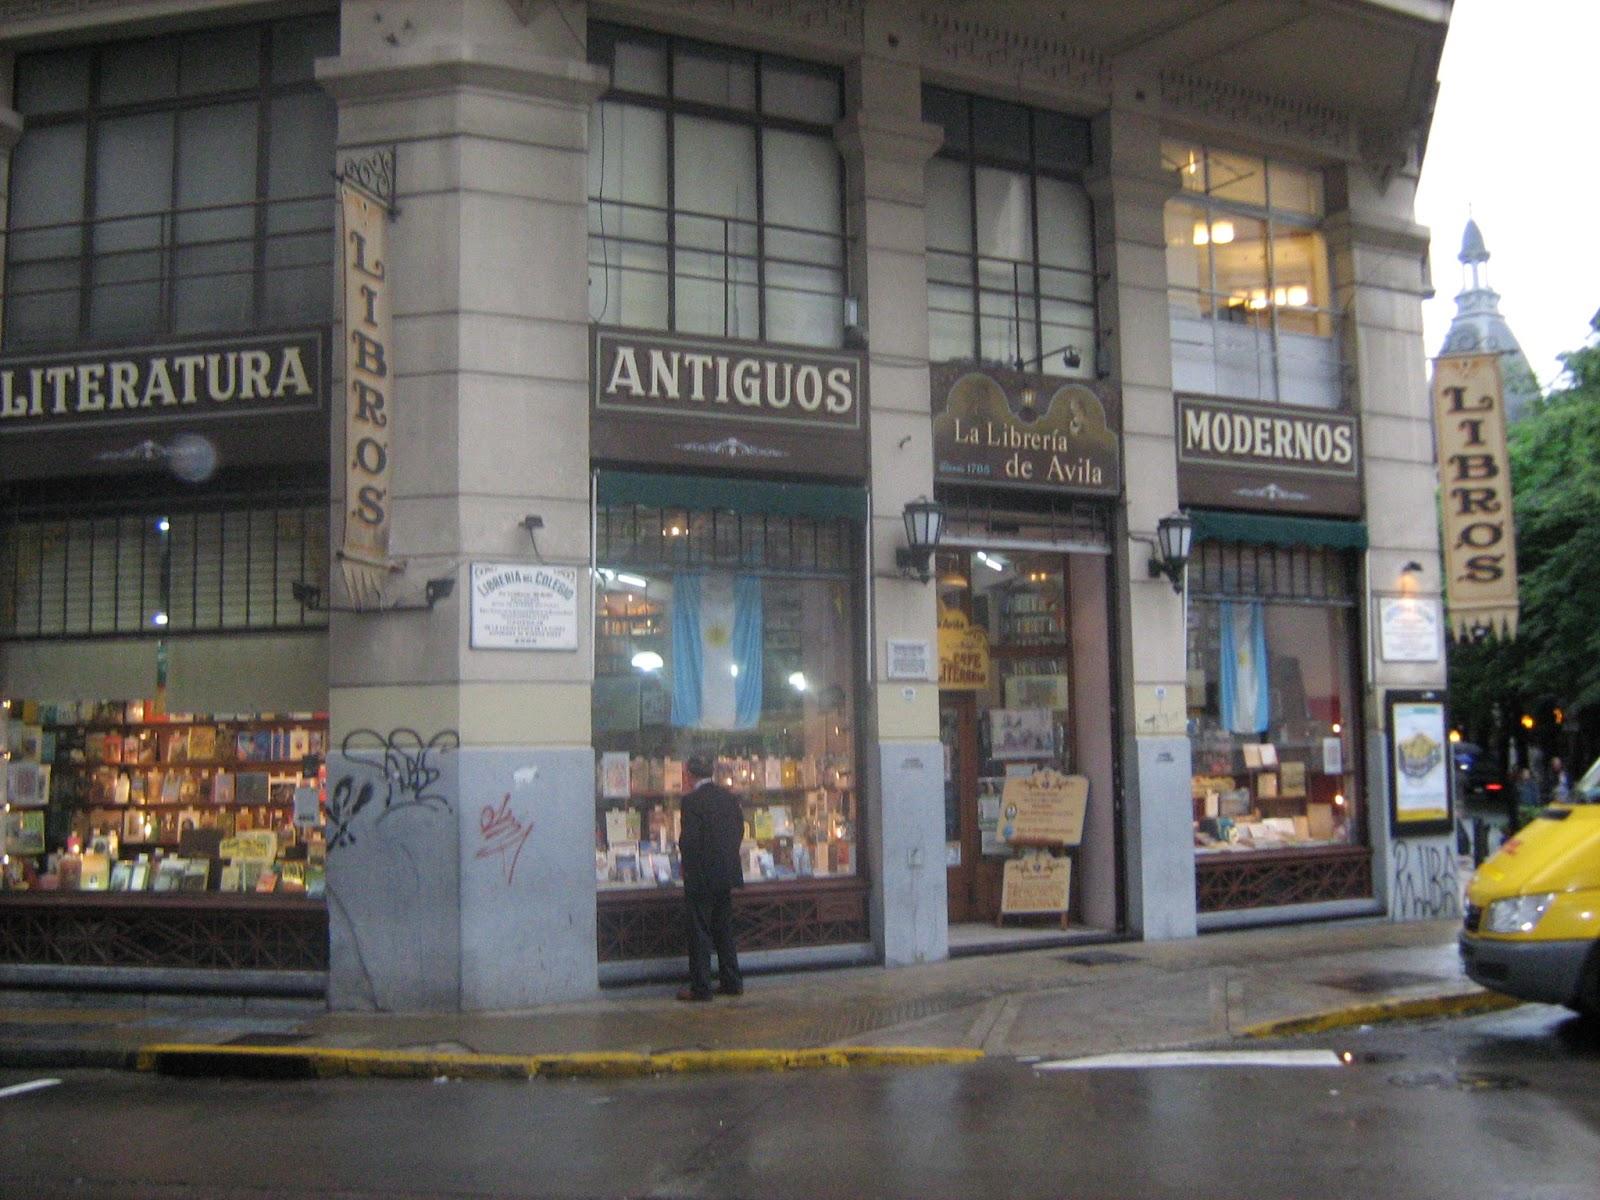 Viajar libros (6): Buenos Aires